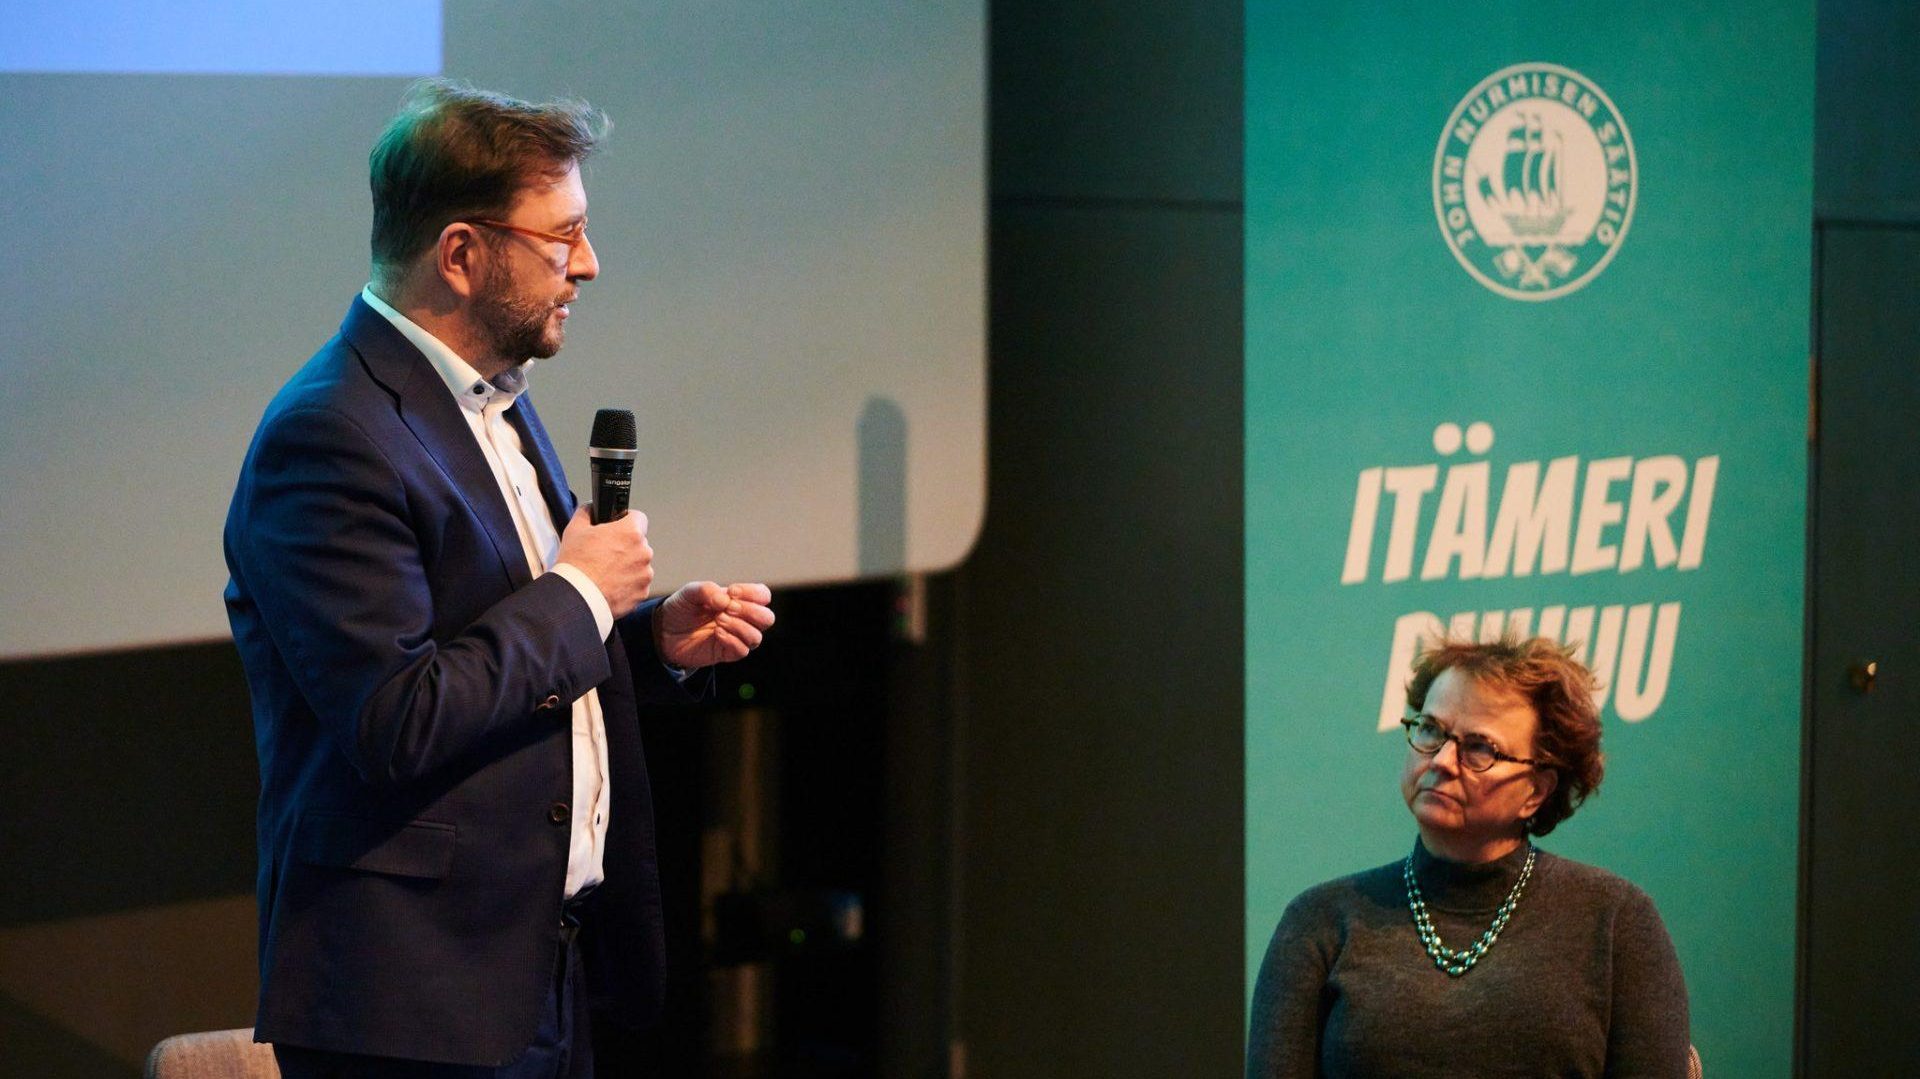 Liikenne- ja viestintäministeri Timo Harakka ja professori Laura Kolbe Itämeri Puhuu -tilaisuudessa